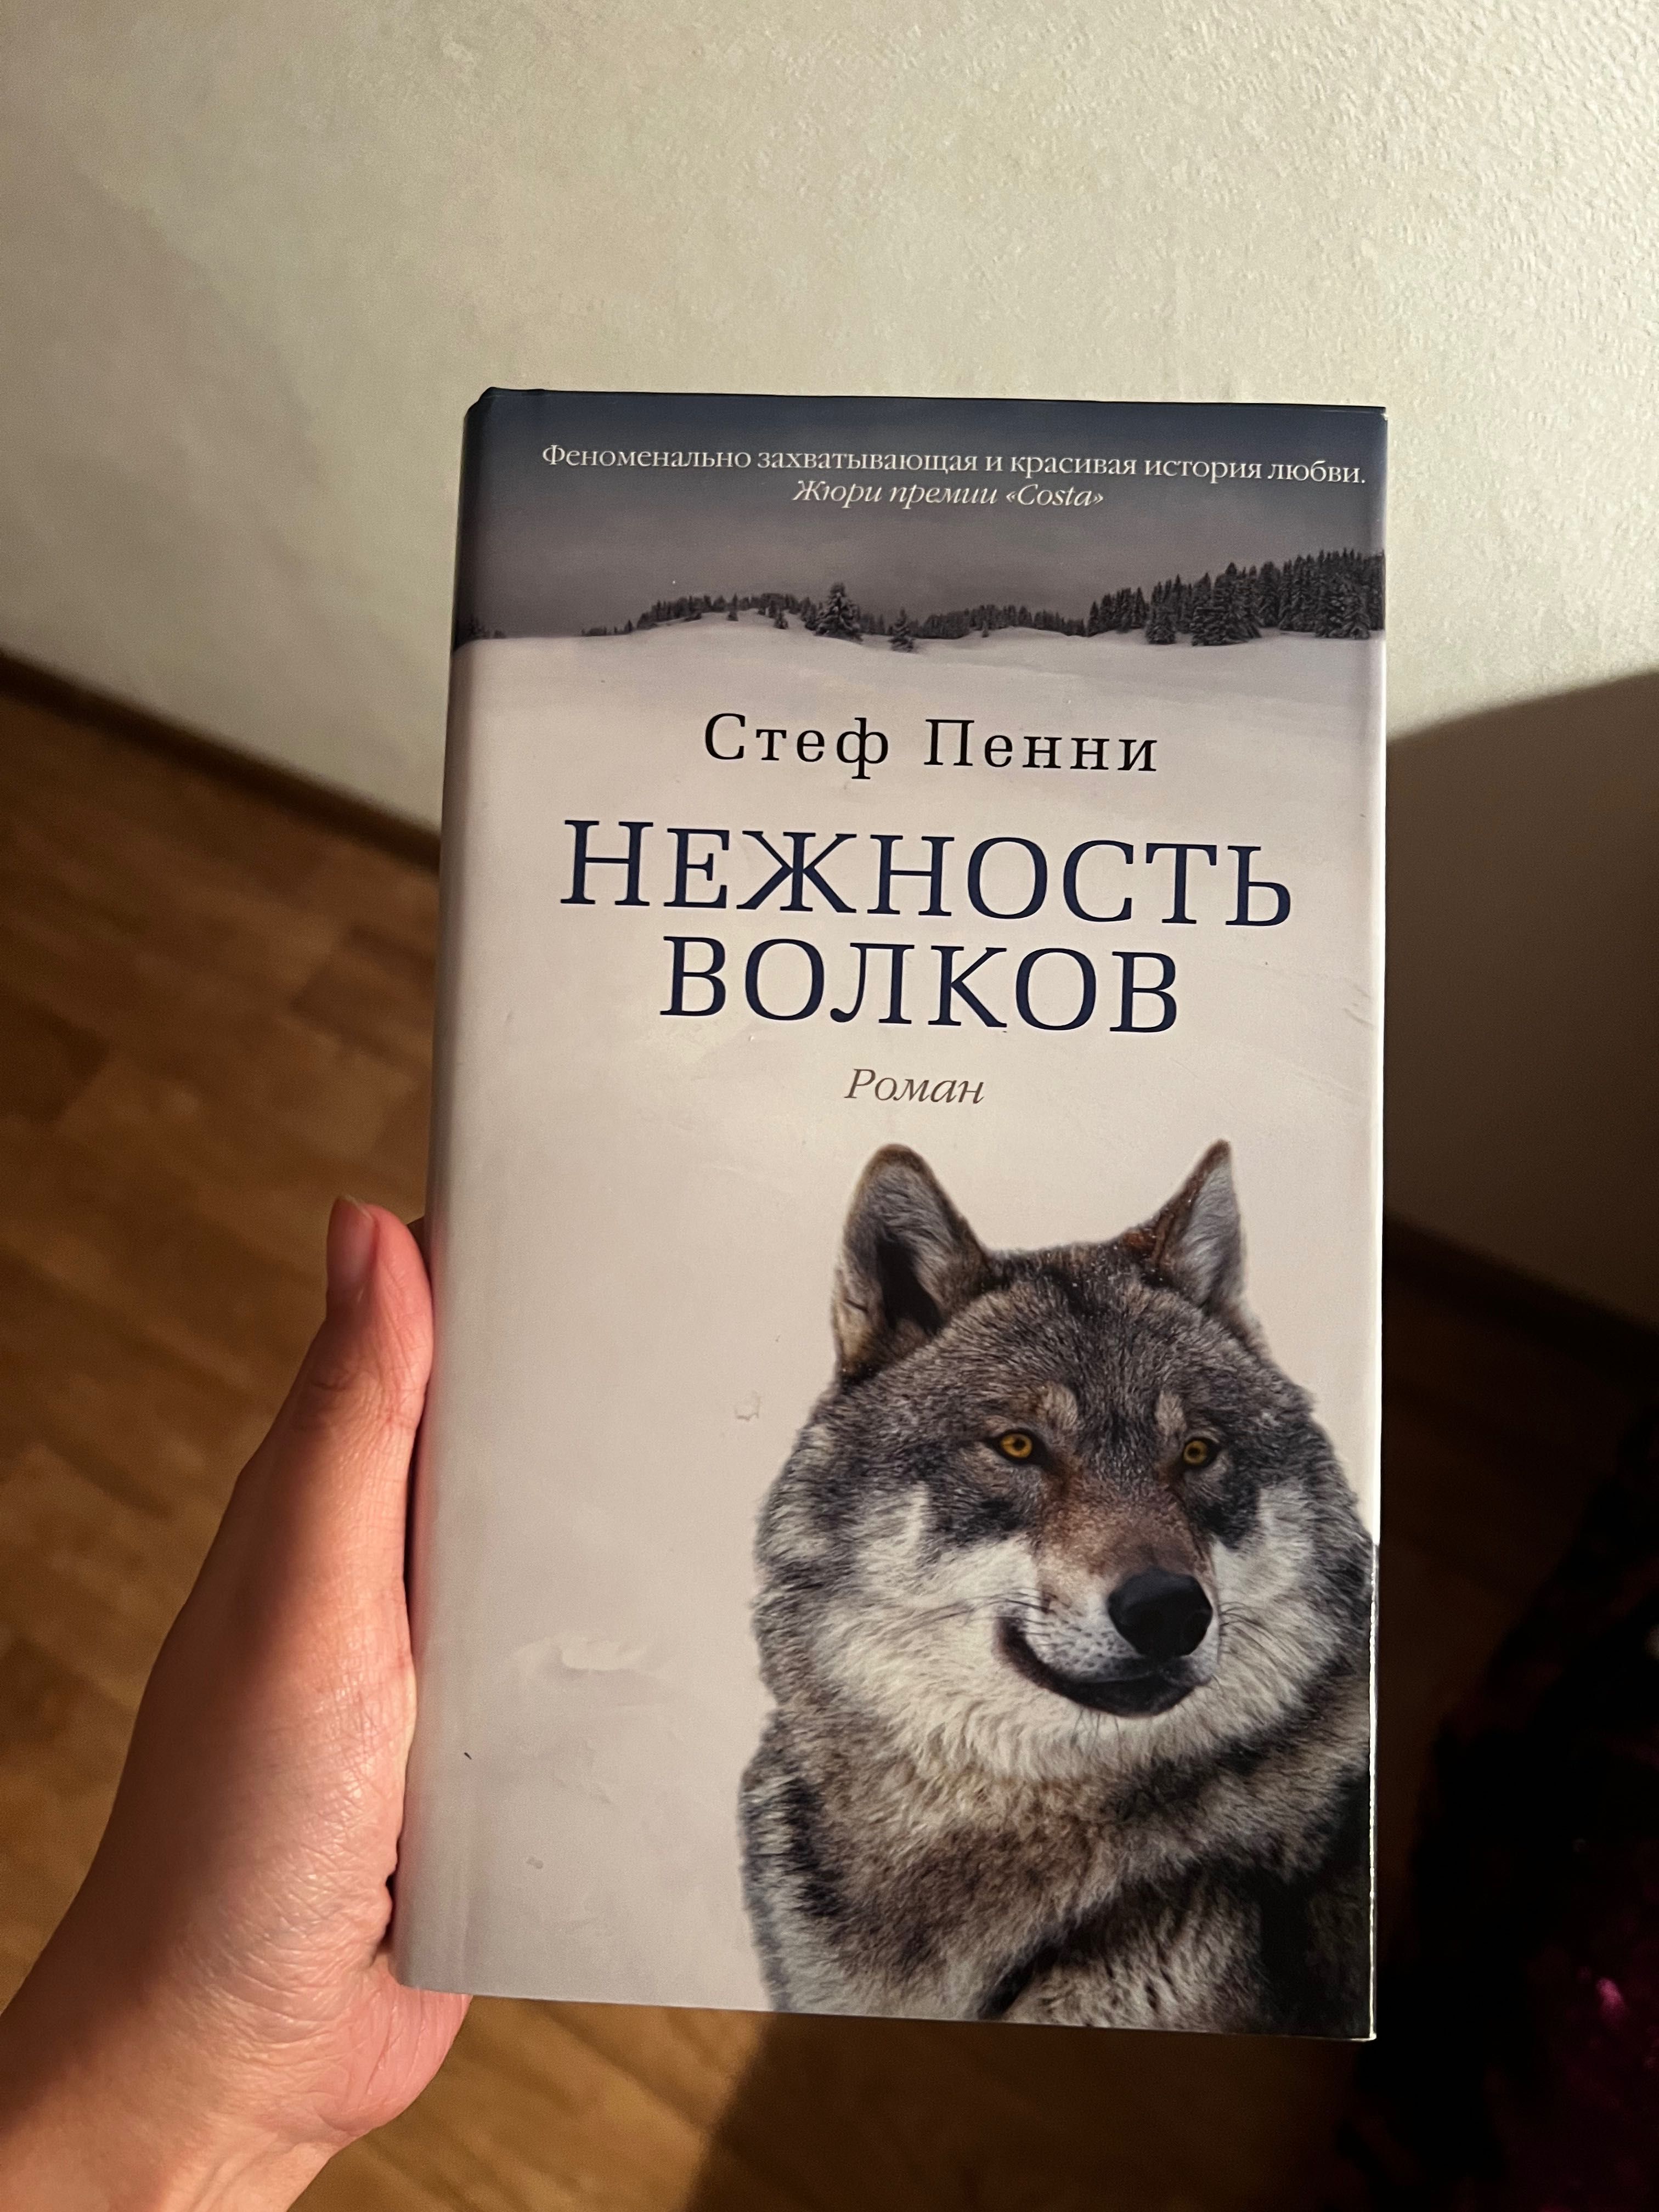 Продам книгу «Нежность Волков» Стеф Пенни